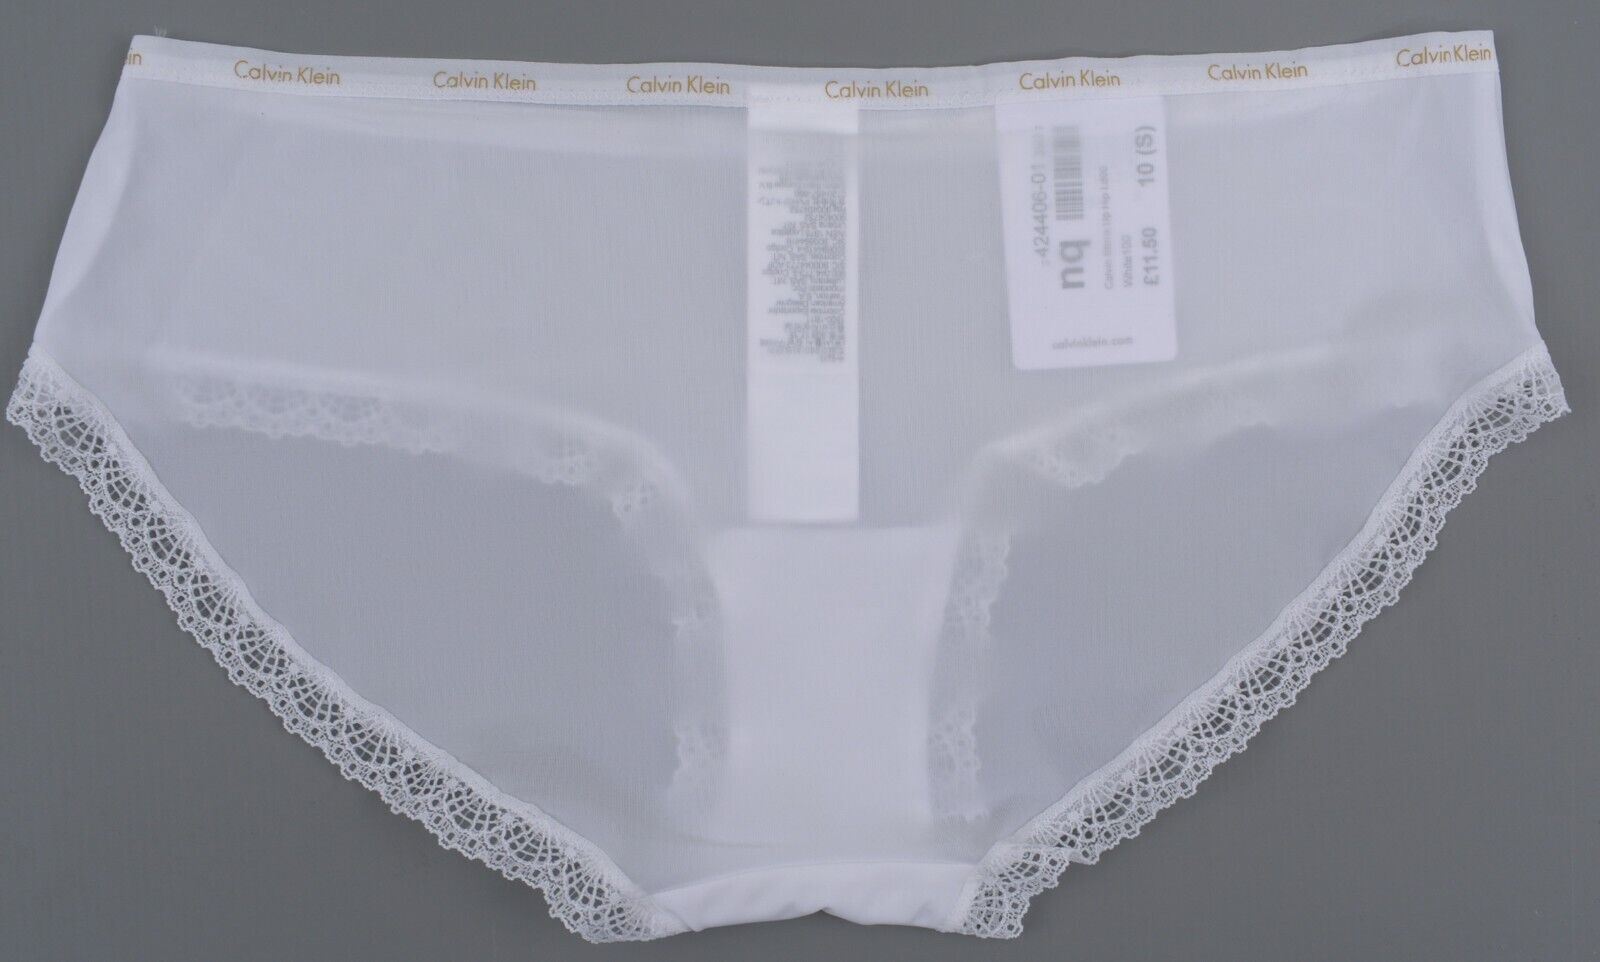 CALVIN KLEIN Underwear: Bottoms Up Women's Hipster Knickers, White, size S